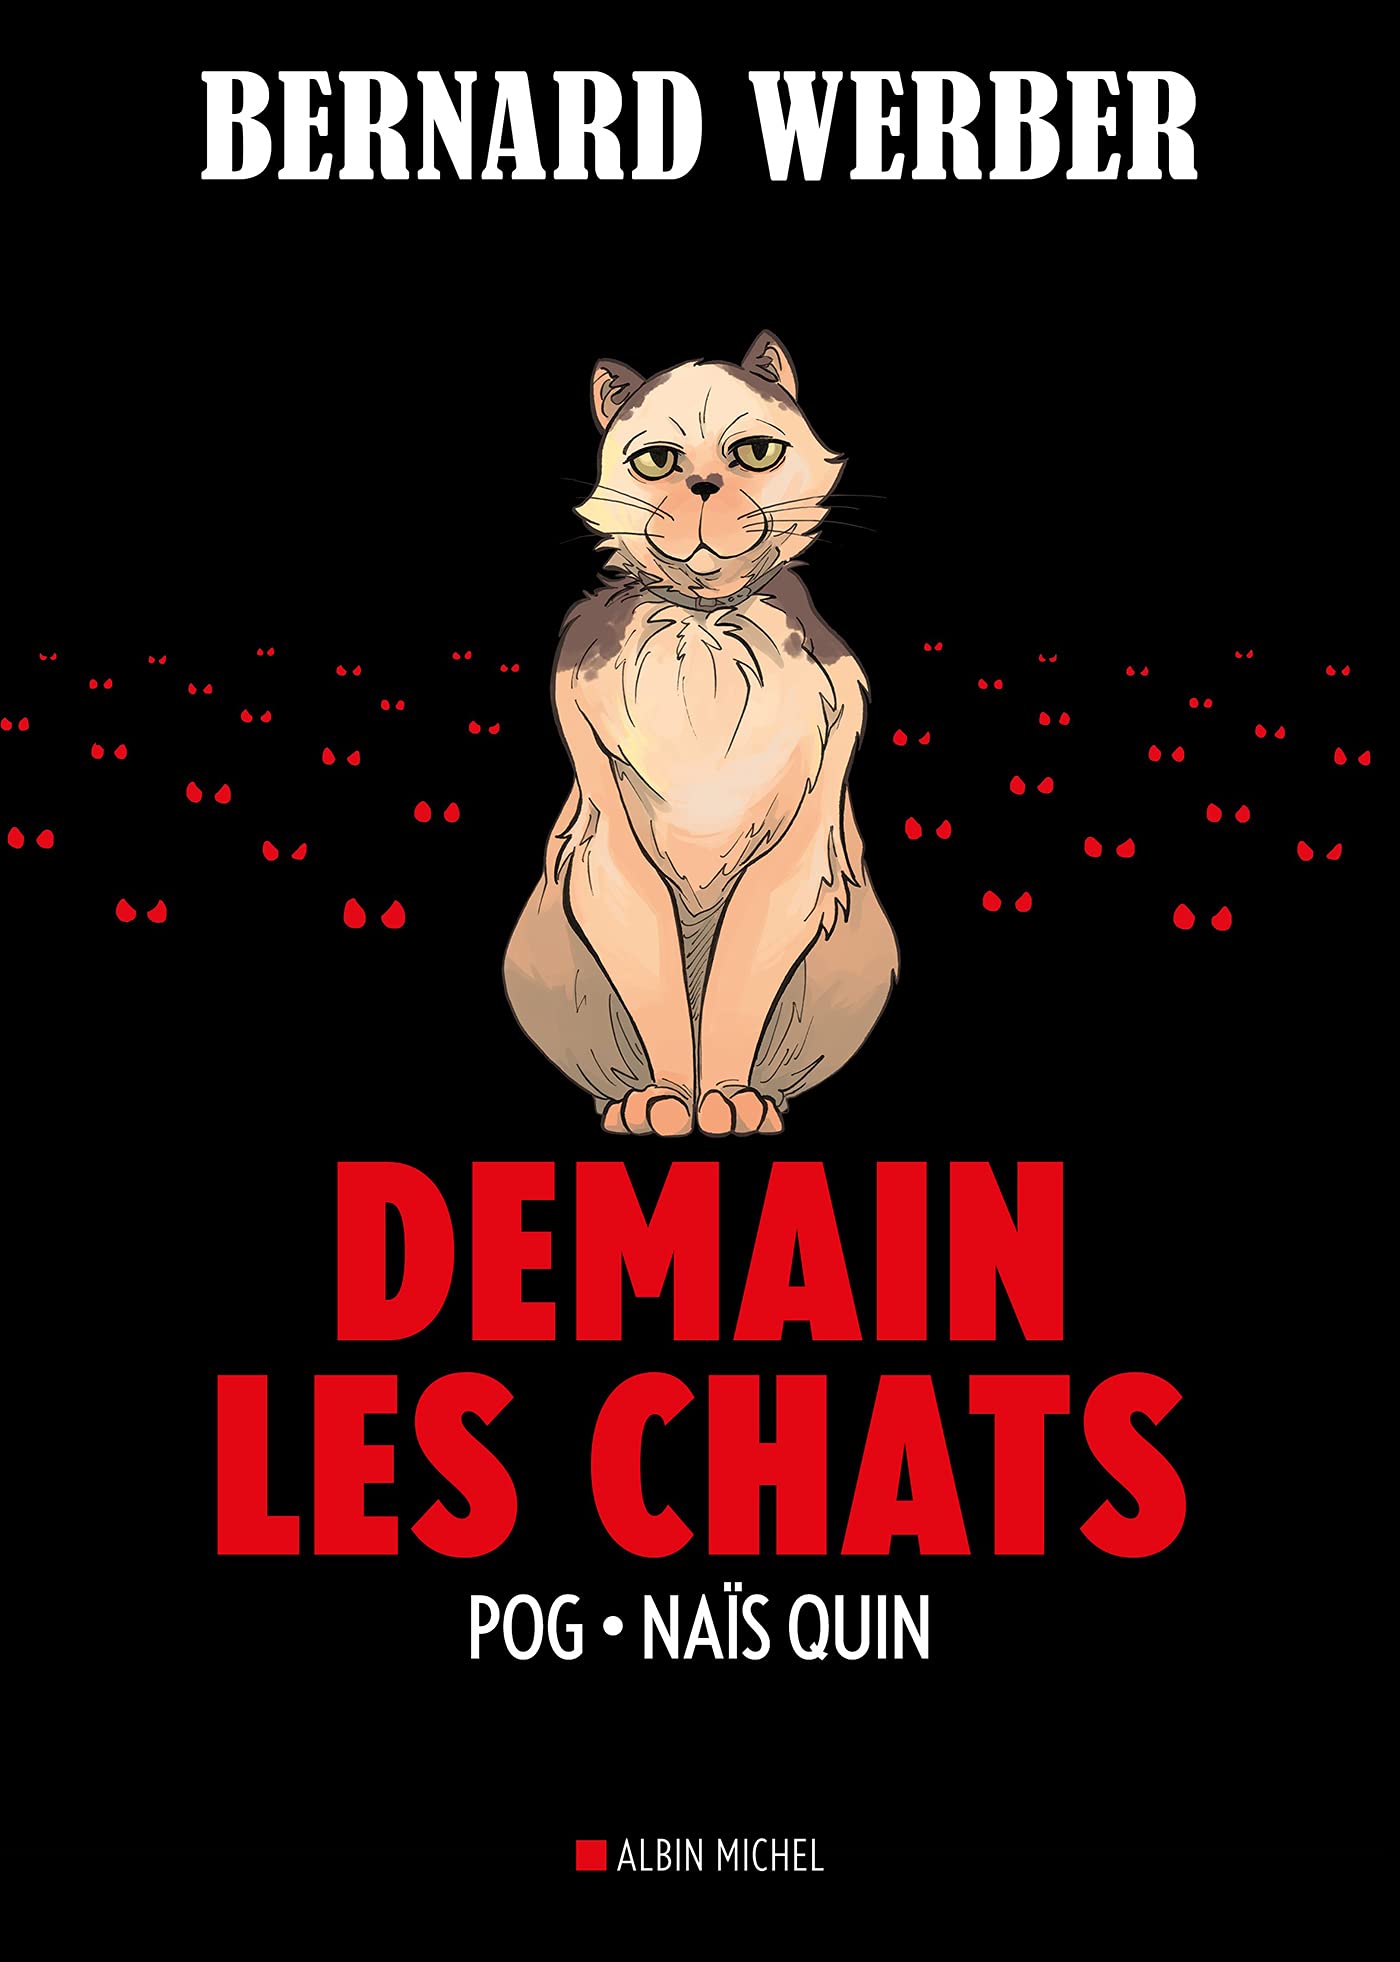 Demain les chats - Par Pog & Naïs Quin, d'après Bernard Werber - Albin Michel